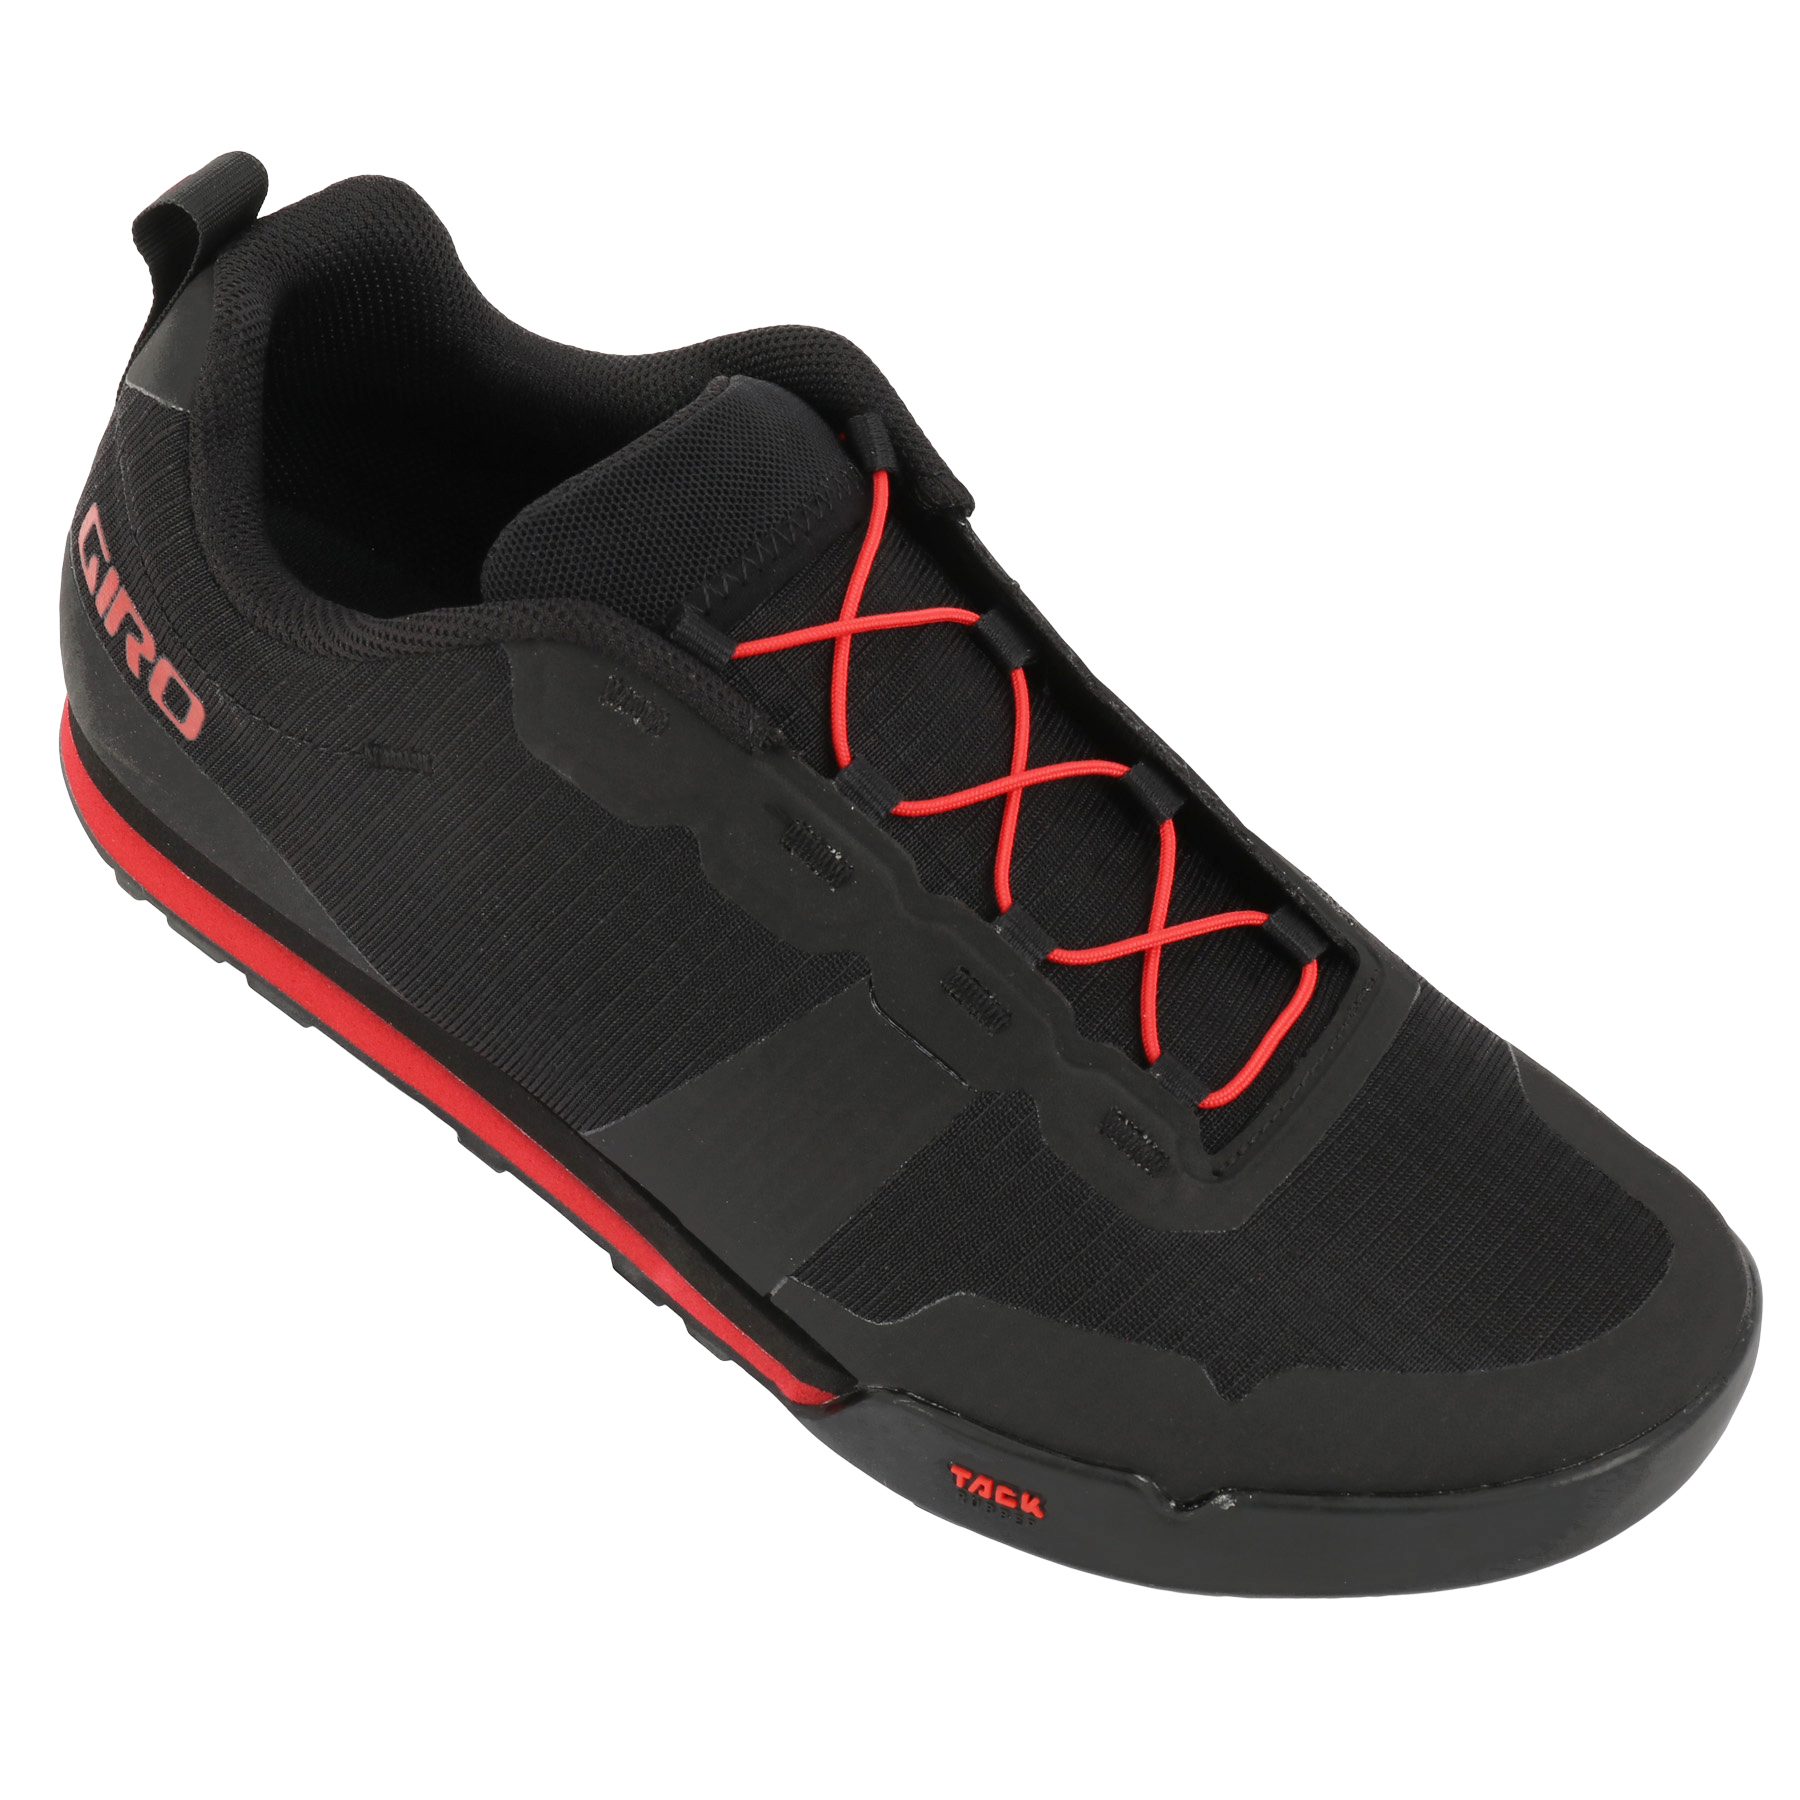 Produktbild von Giro Tracker Fastlace Flatpedal Schuhe Herren - black/bright red